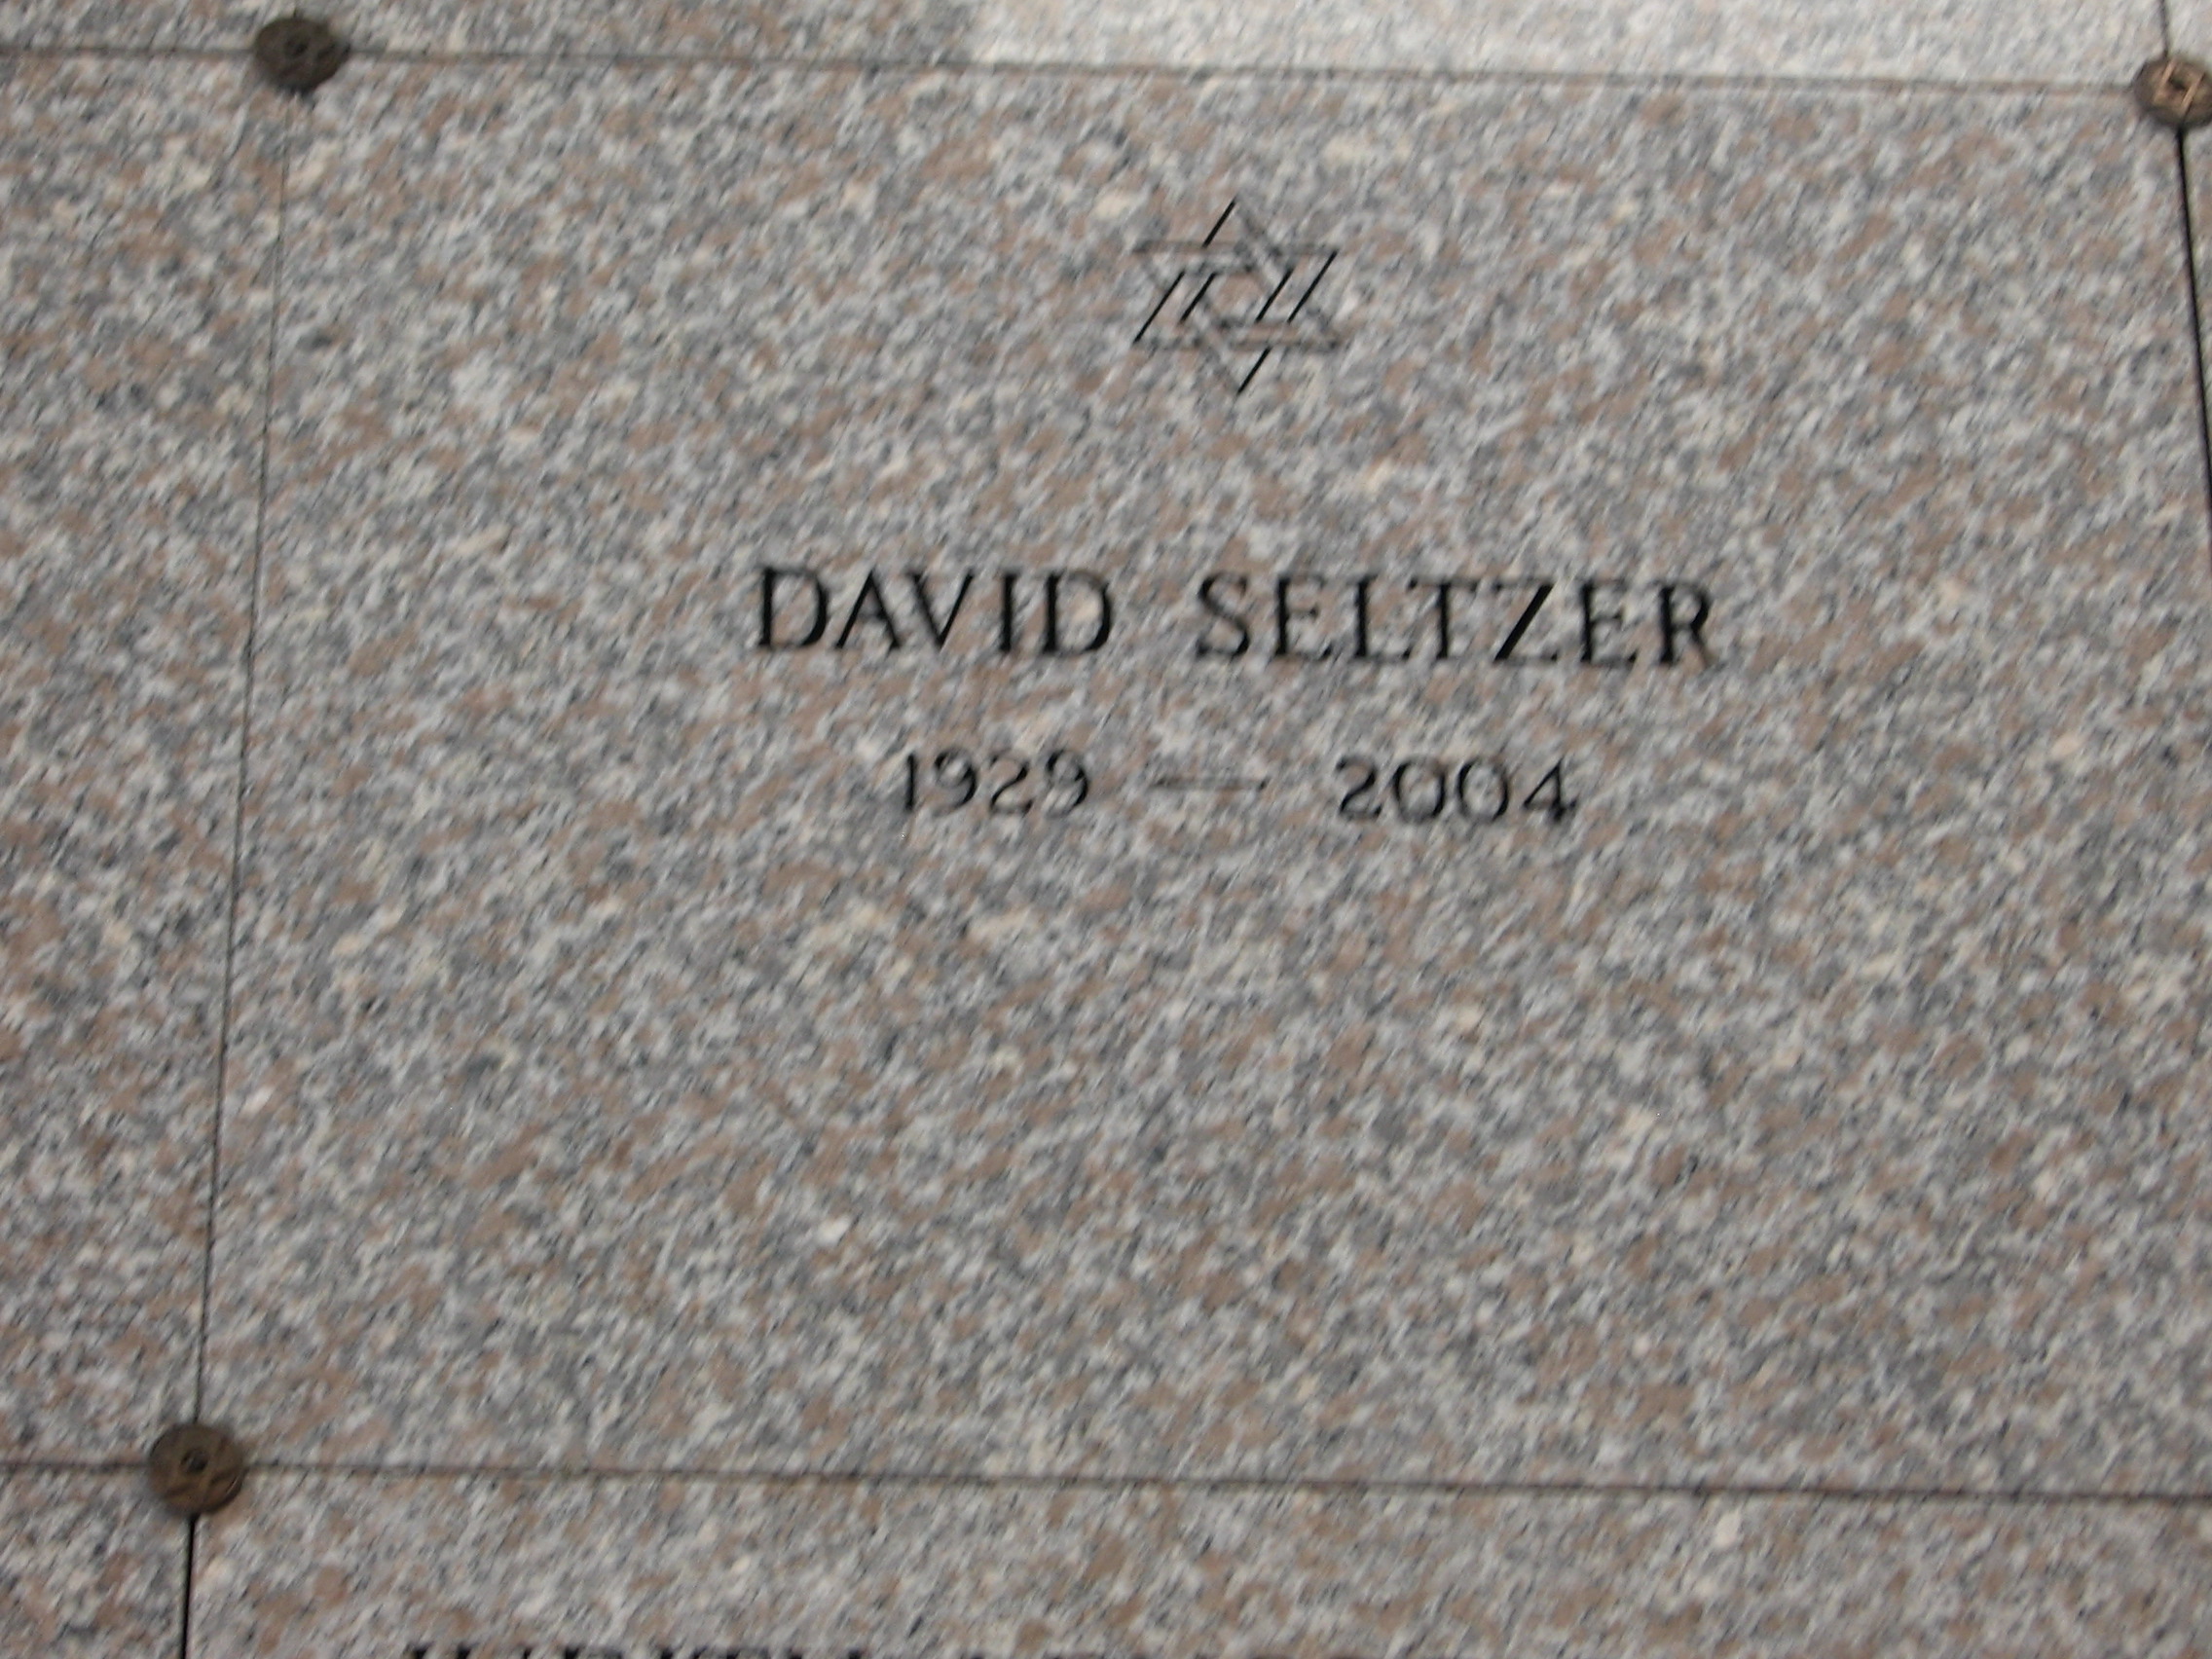 David Seltzer